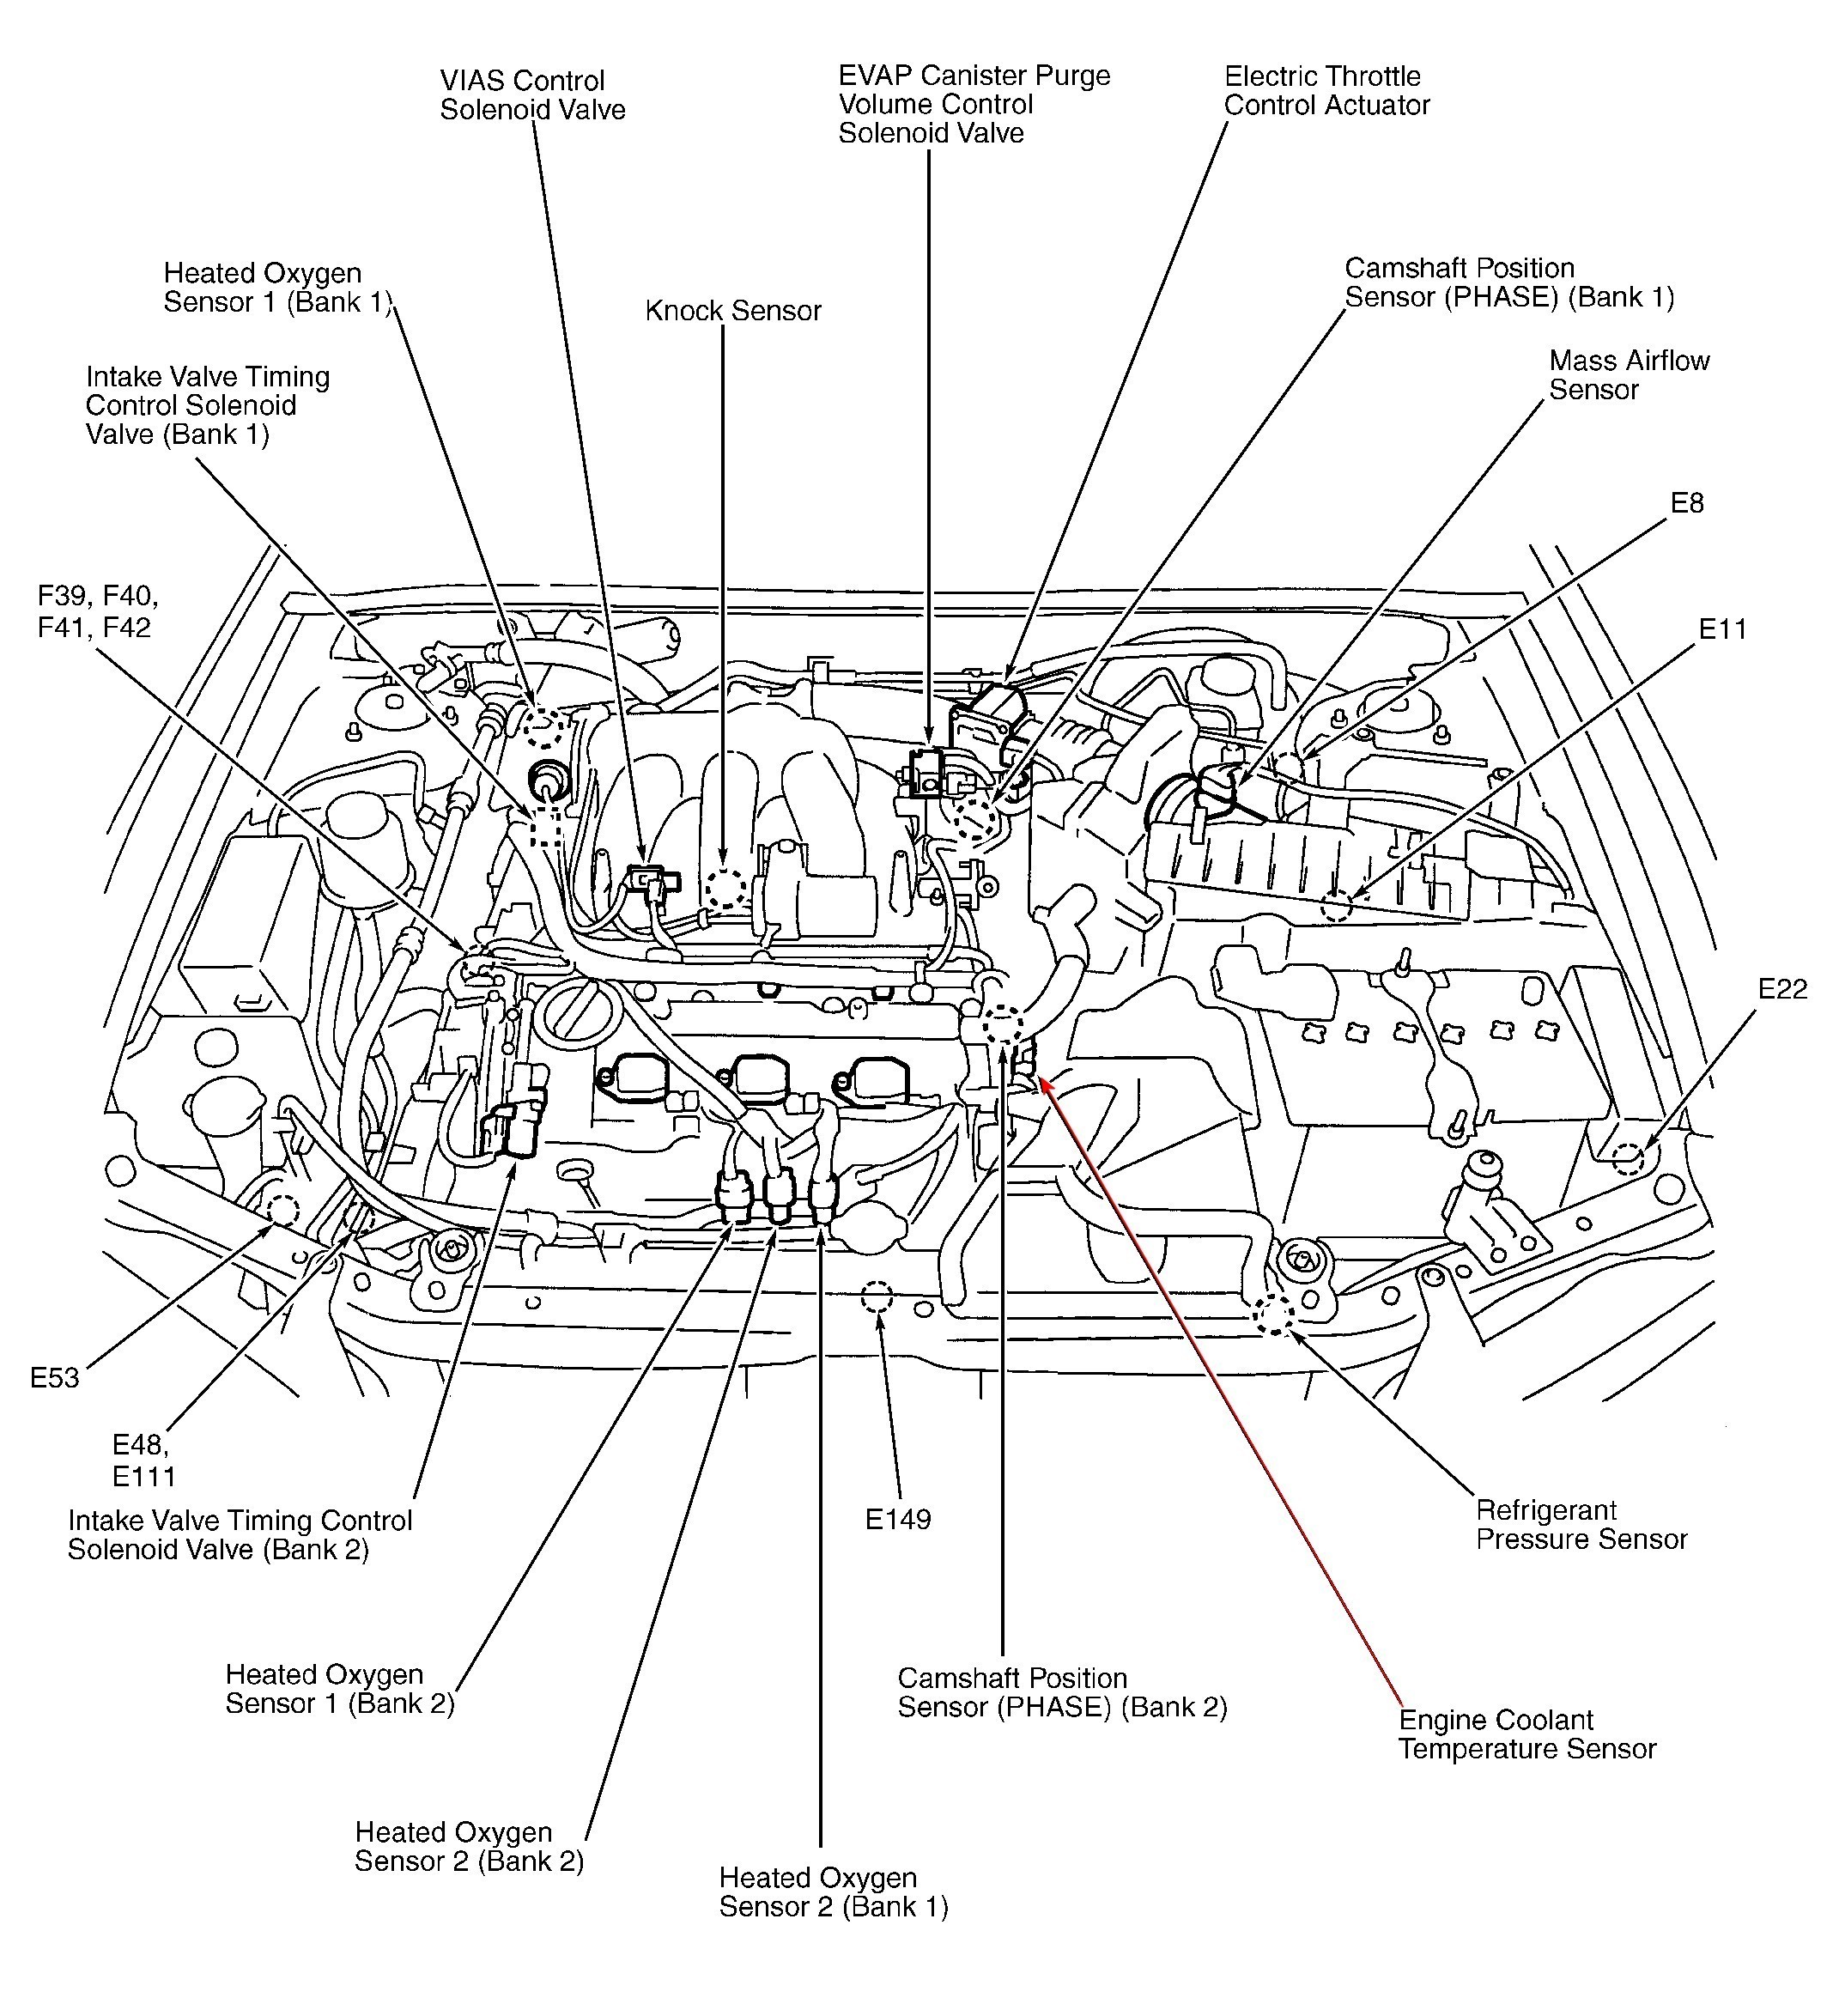 2004 toyota Sequoia Parts Diagram Pcv Valve toyota Engine Parts Diagram toyota Wiring Diagrams Of 2004 toyota Sequoia Parts Diagram